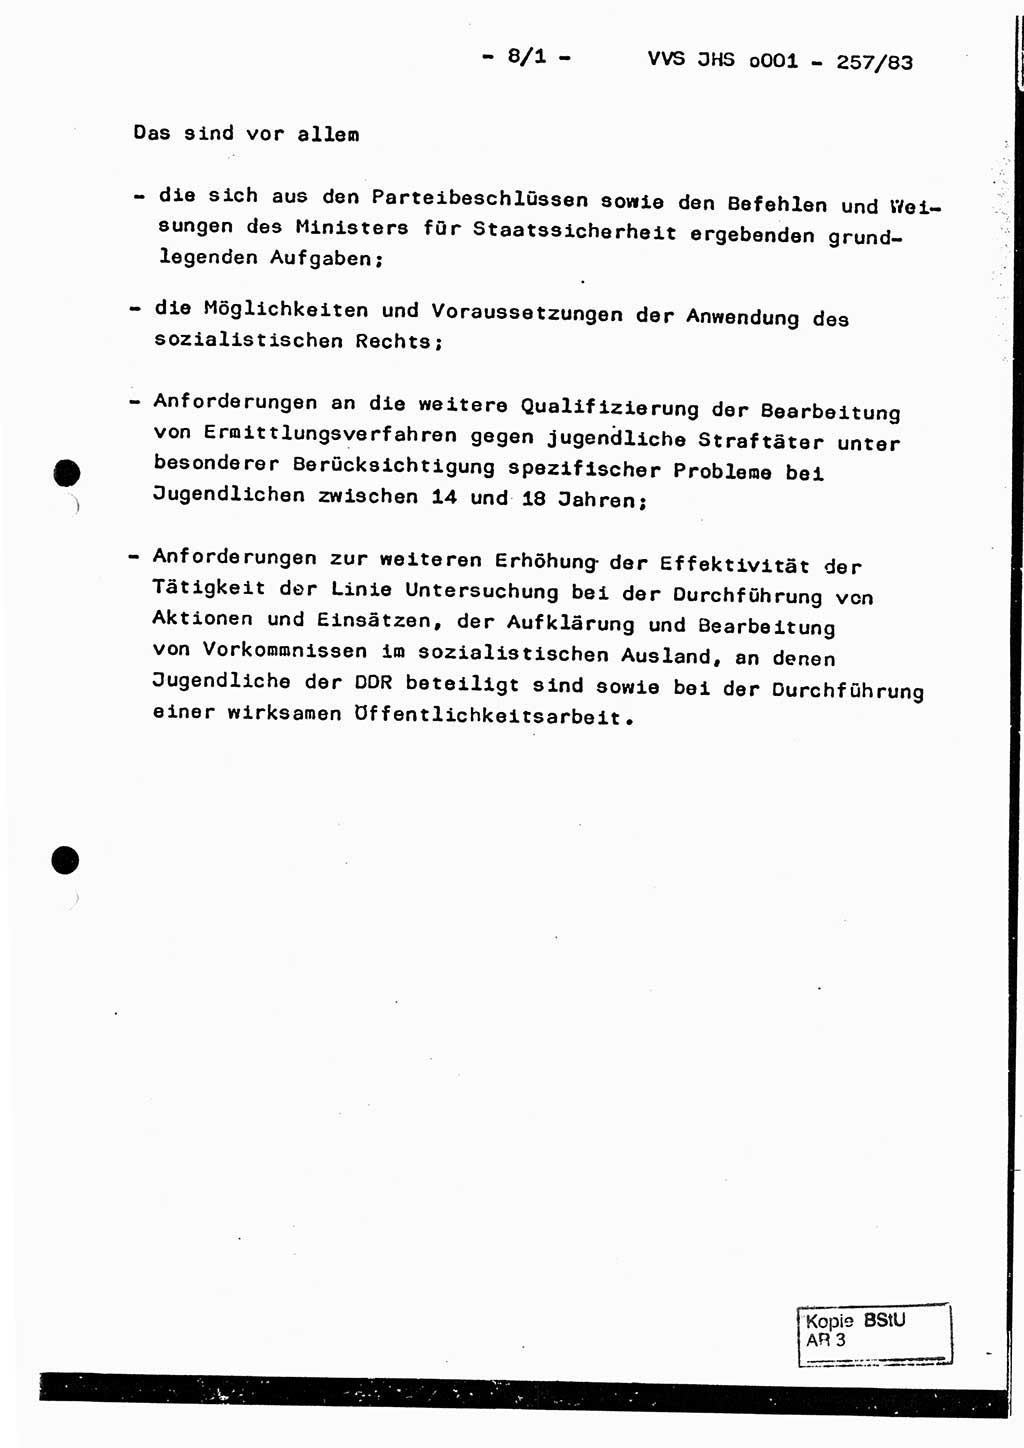 Dissertation, Oberst Helmut Lubas (BV Mdg.), Oberstleutnant Manfred Eschberger (HA IX), Oberleutnant Hans-Jürgen Ludwig (JHS), Ministerium für Staatssicherheit (MfS) [Deutsche Demokratische Republik (DDR)], Juristische Hochschule (JHS), Vertrauliche Verschlußsache (VVS) o001-257/83, Potsdam 1983, Seite 8/1 (Diss. MfS DDR JHS VVS o001-257/83 1983, S. 8/1)